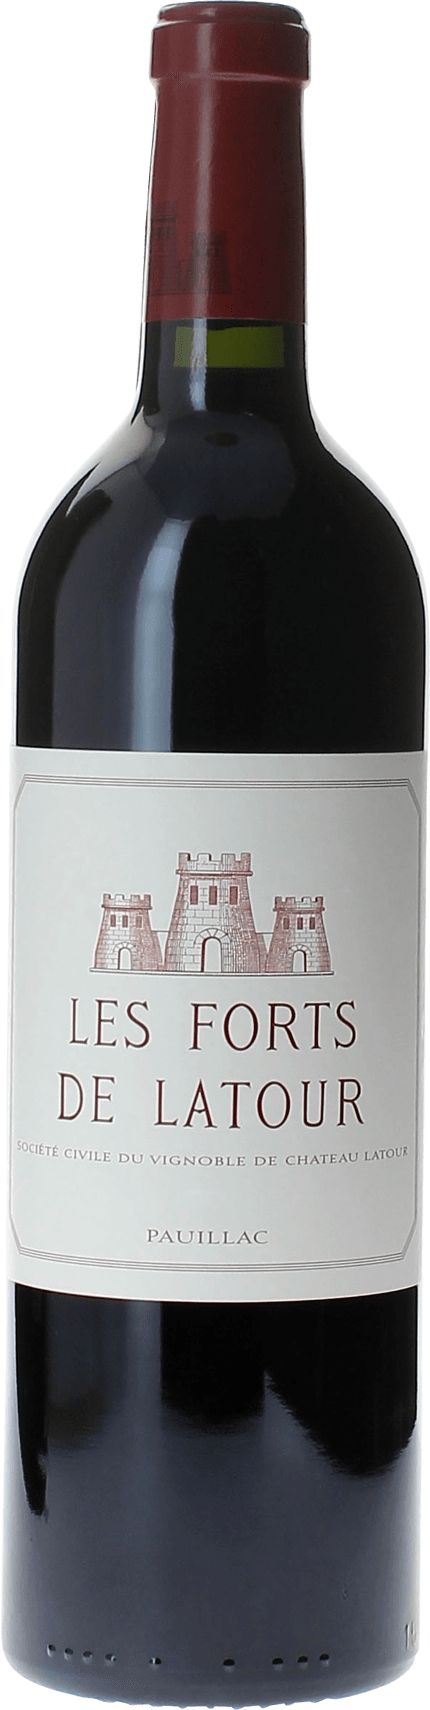 Les forts de latour 1994 2me vin de LATOUR Pauillac, Bordeaux rouge